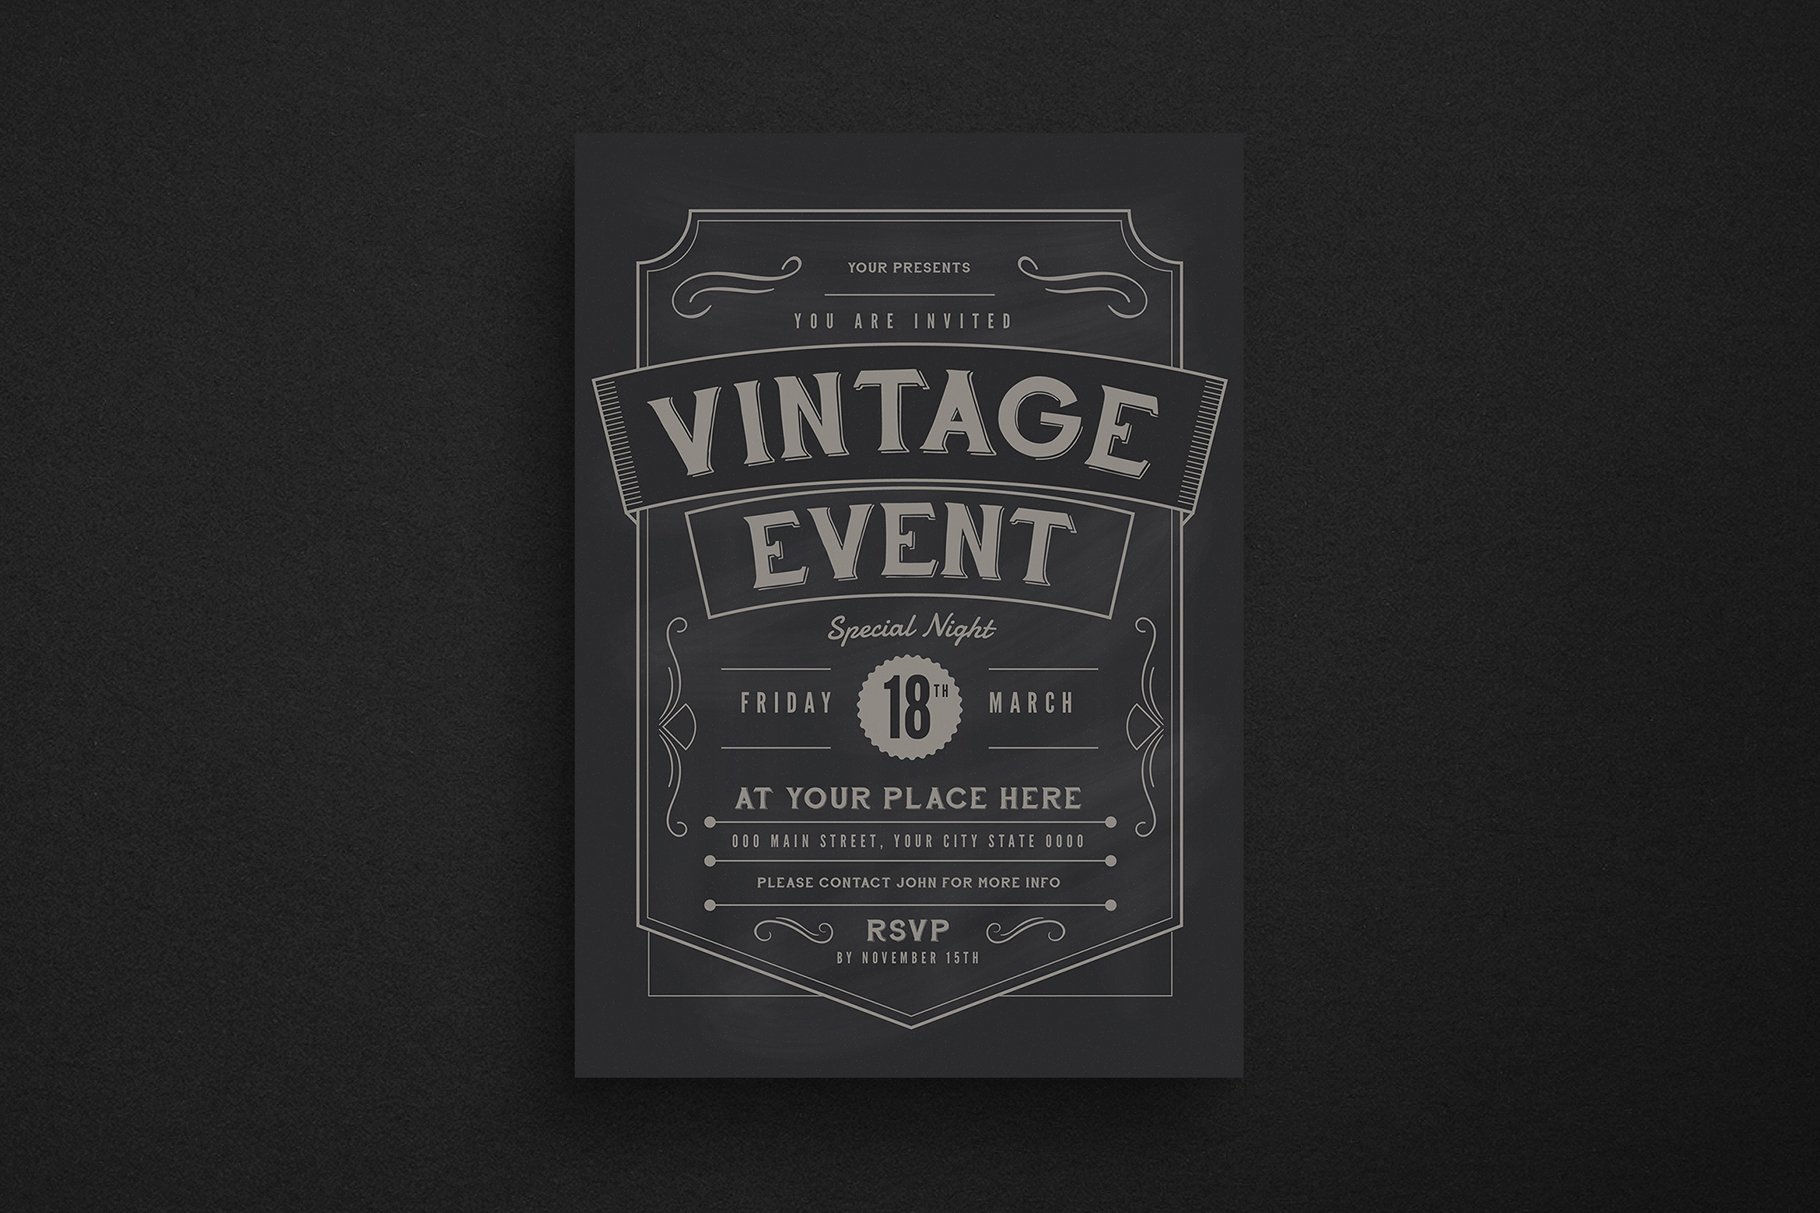 Vintage Event Flyer cover image.